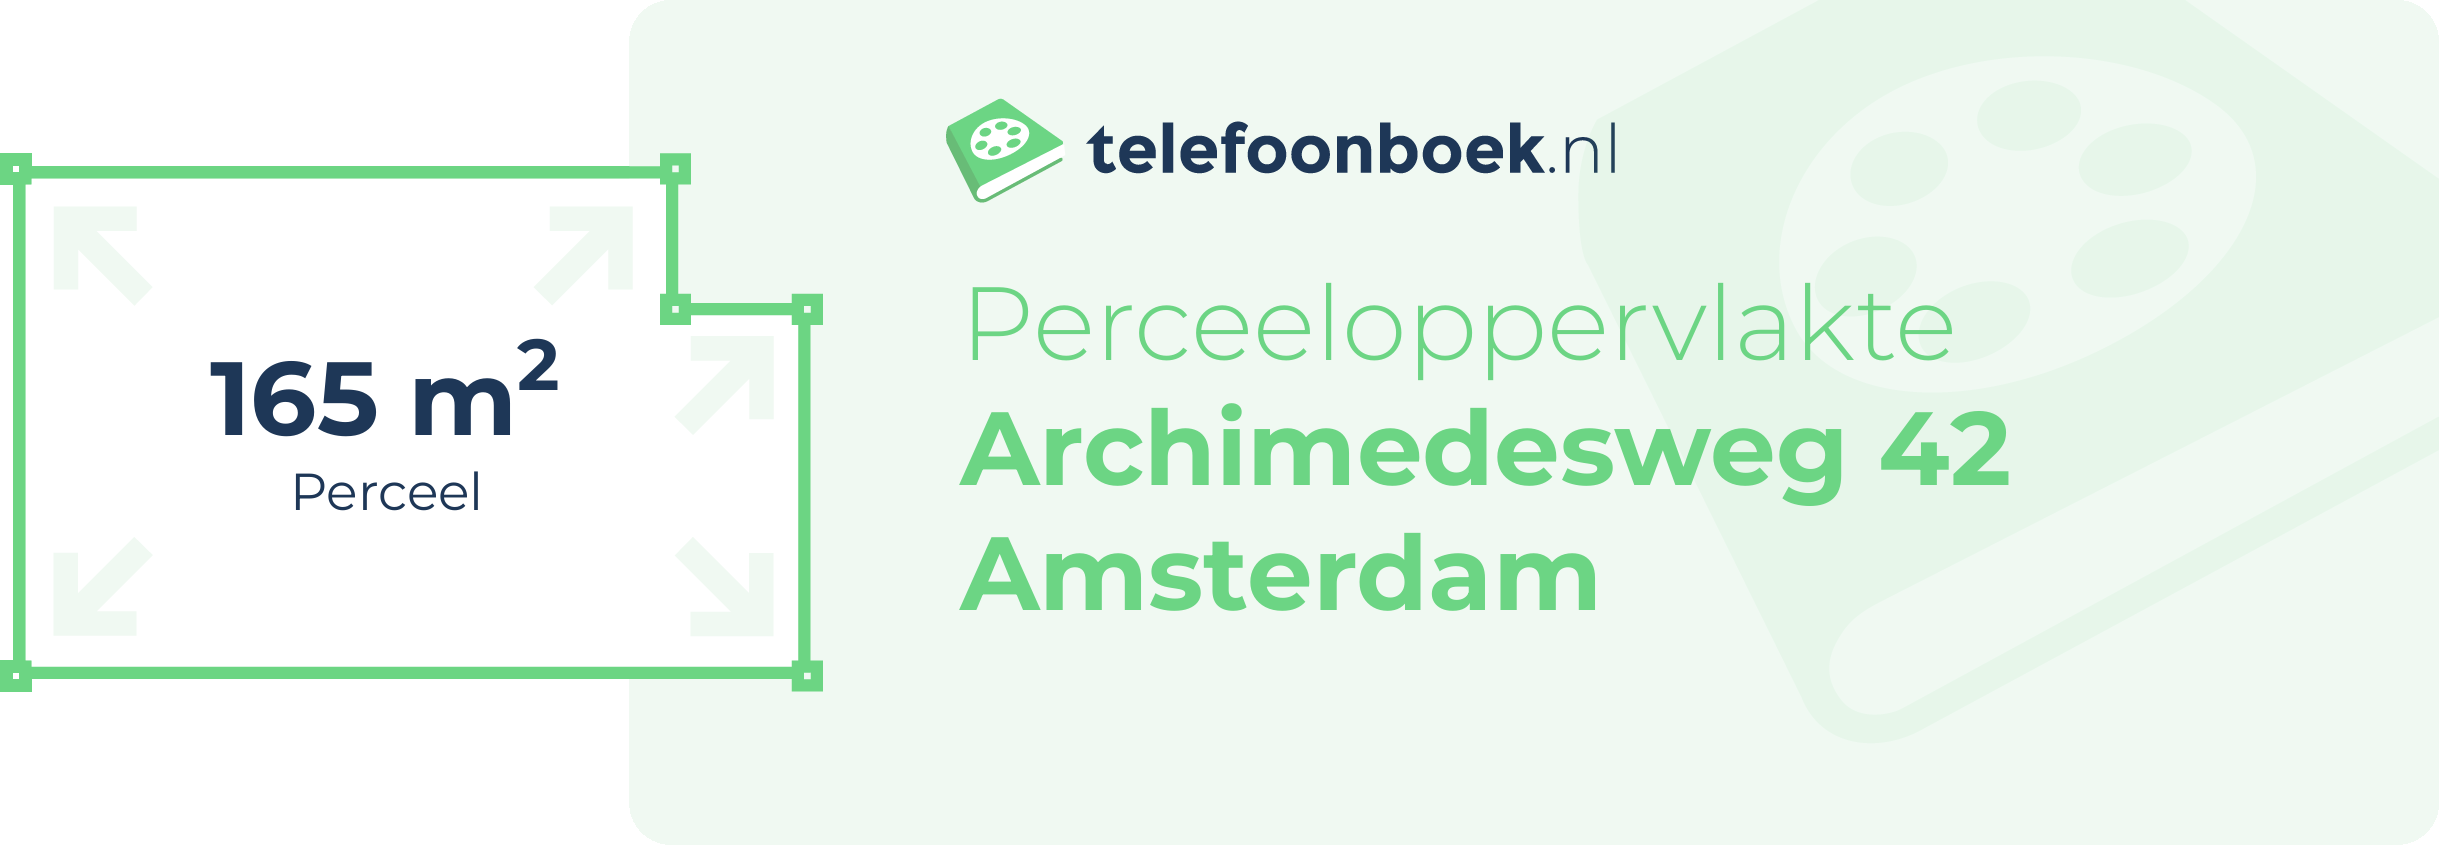 Perceeloppervlakte Archimedesweg 42 Amsterdam